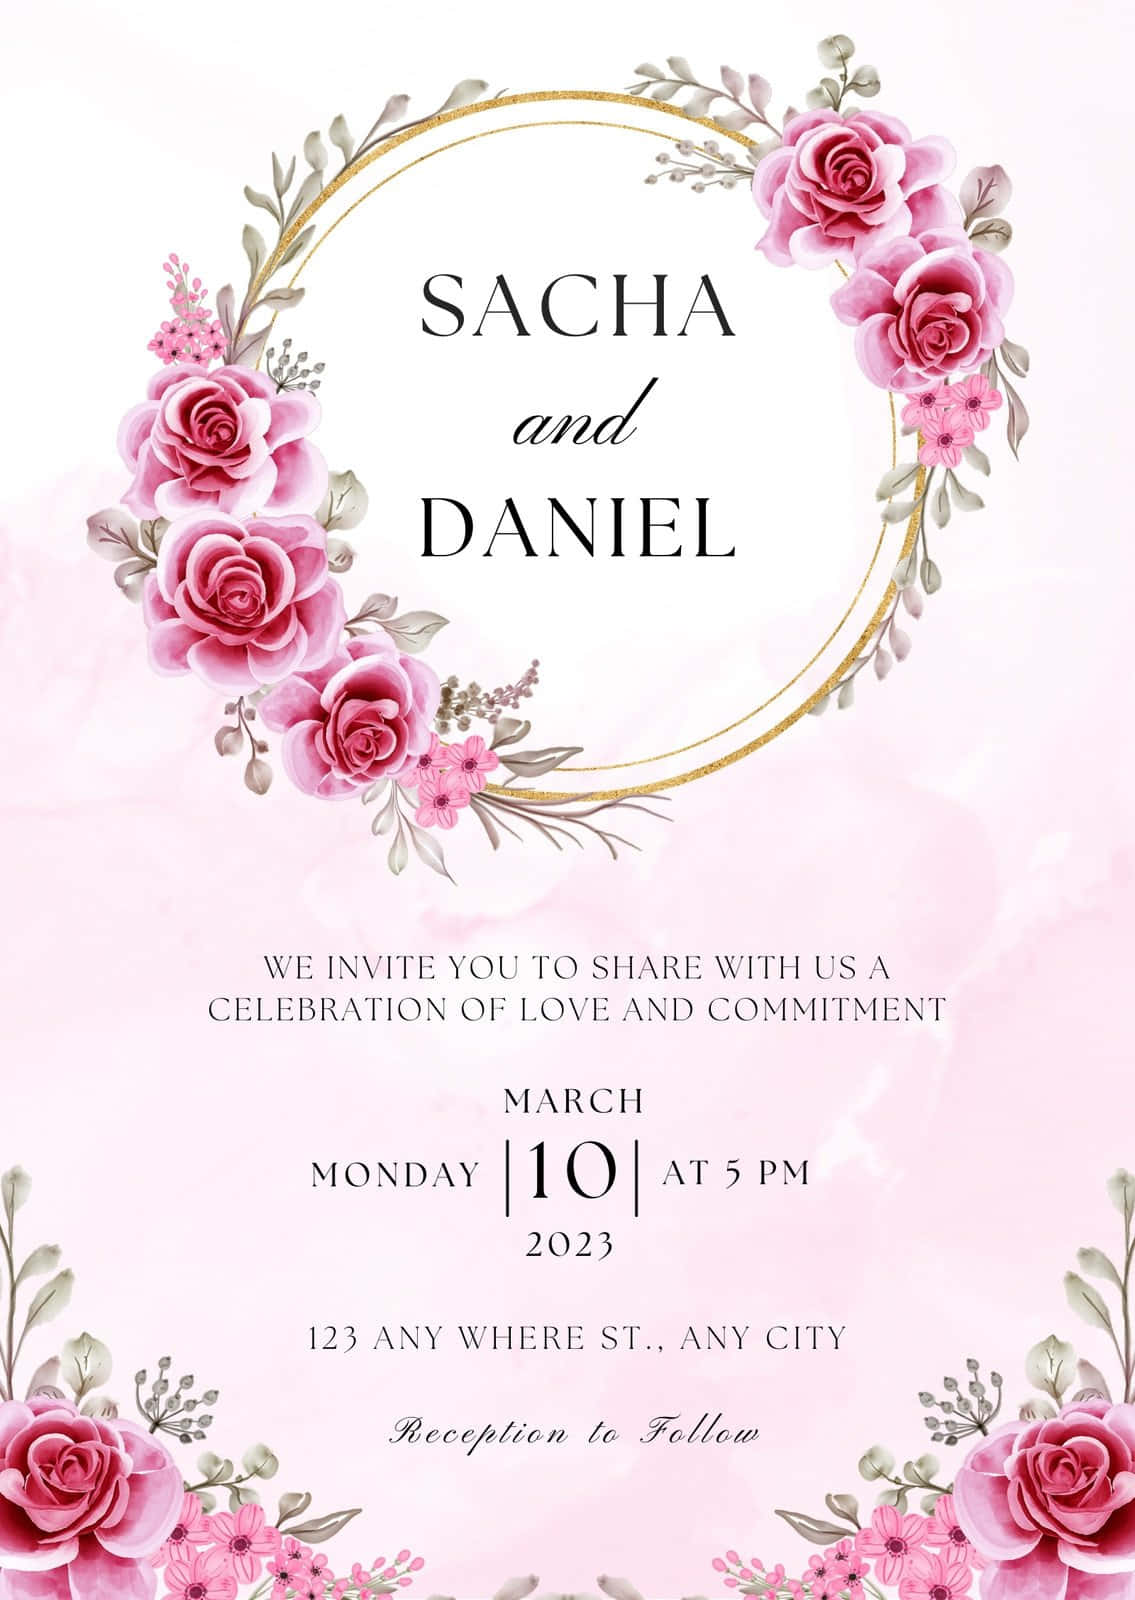 Rosablumige Hochzeitseinladung Hintergrund